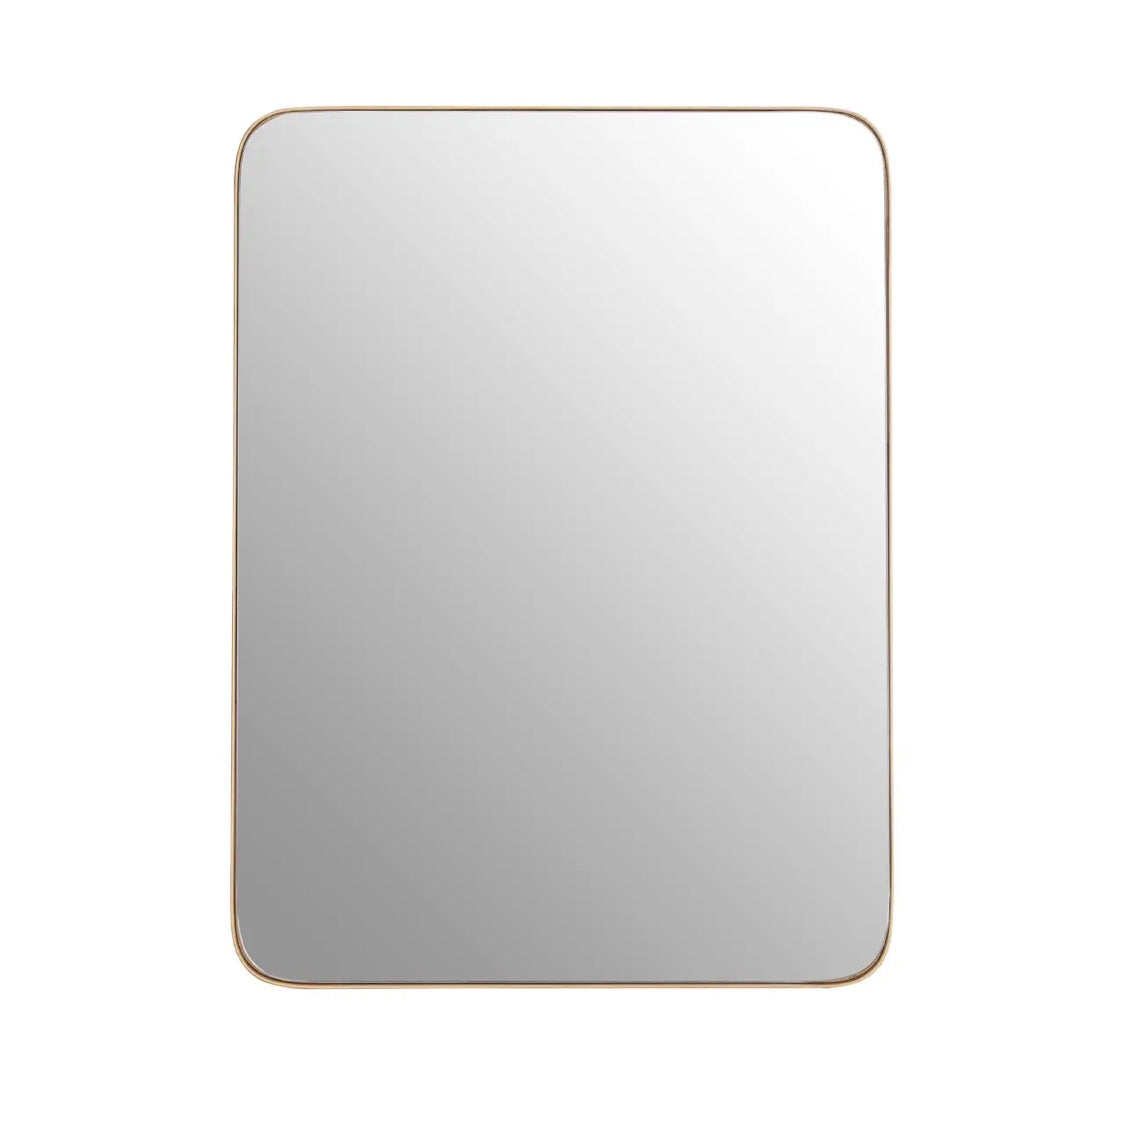 Thin Gold Edge Mirror